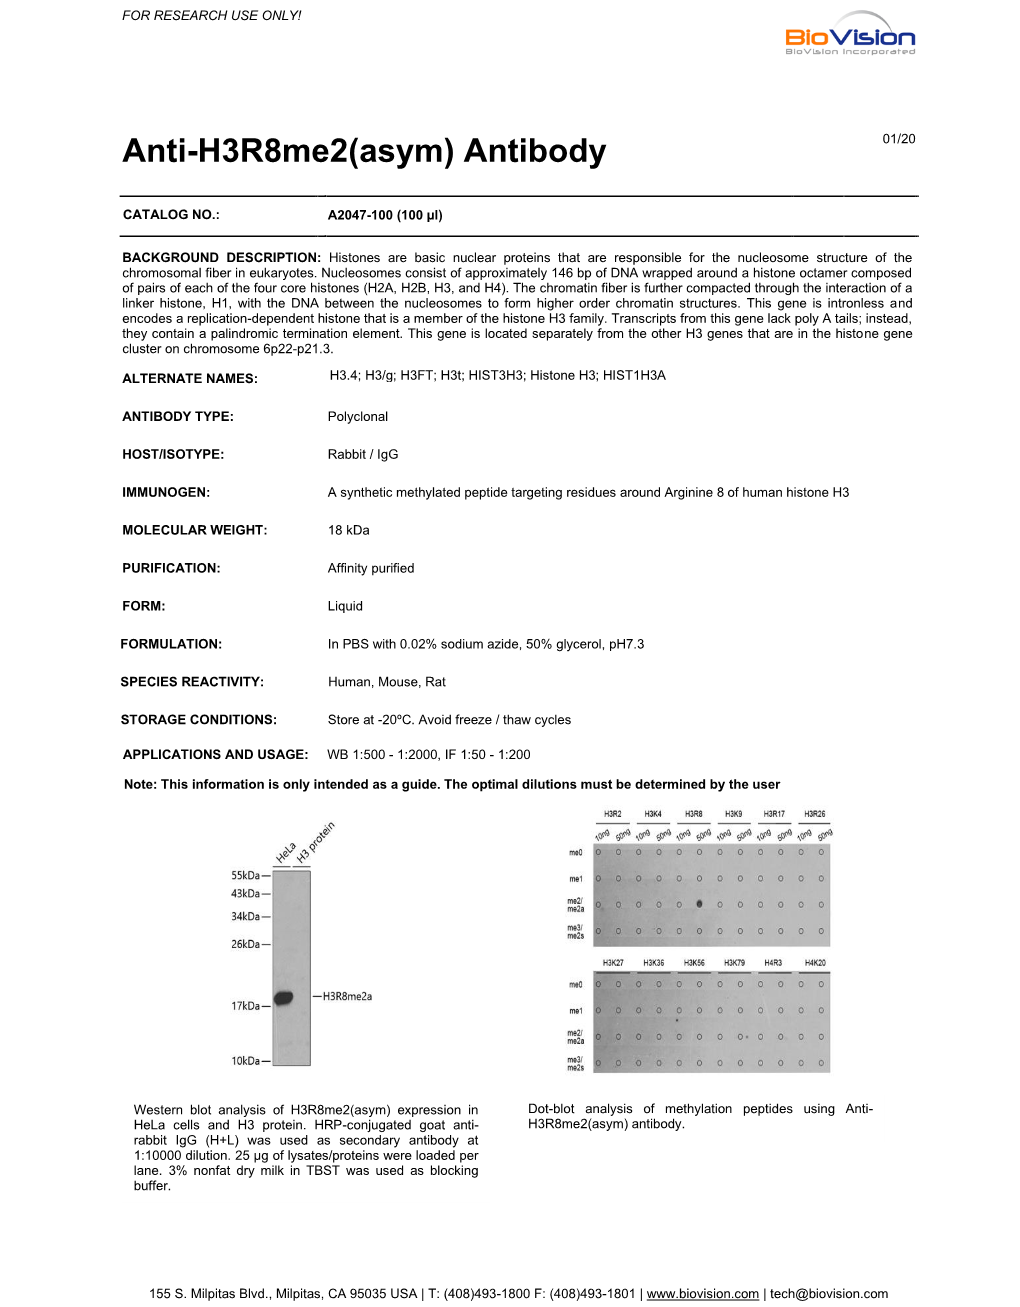 Anti-H3r8me2(Asym) Antibody